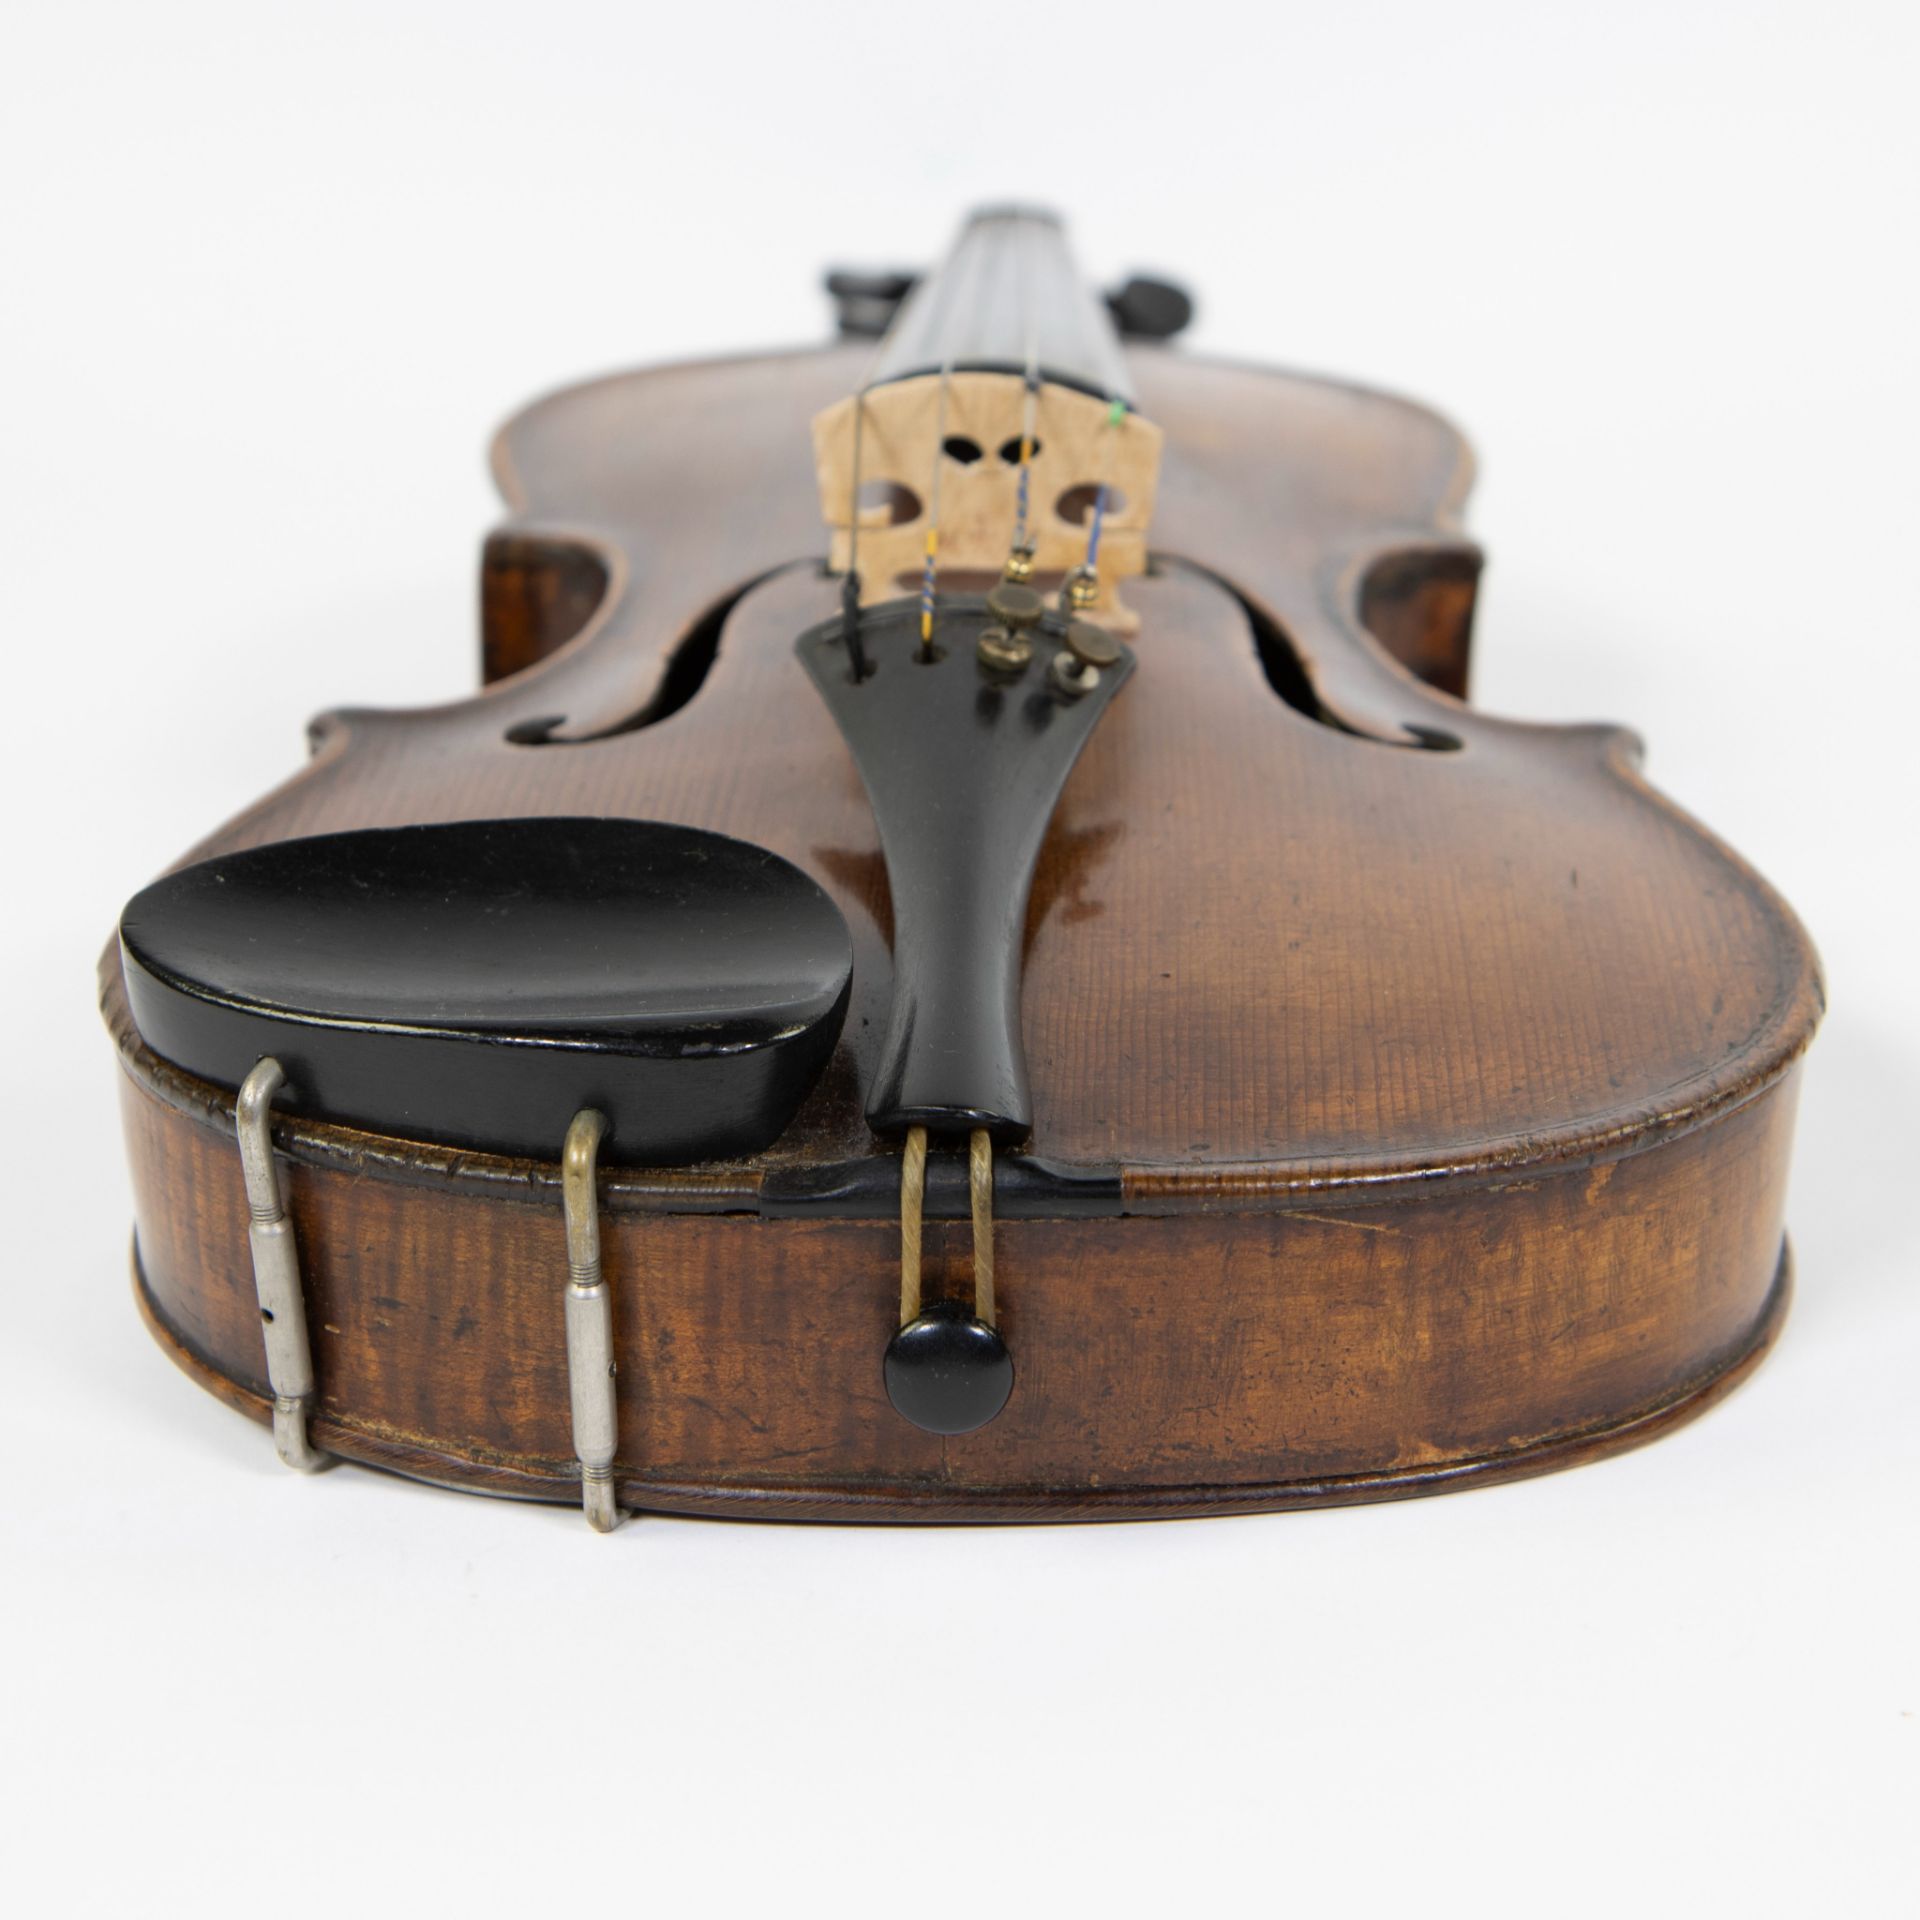 Violin no label, fire stamp heel 'RG', 356mm, wooden case - Image 5 of 5